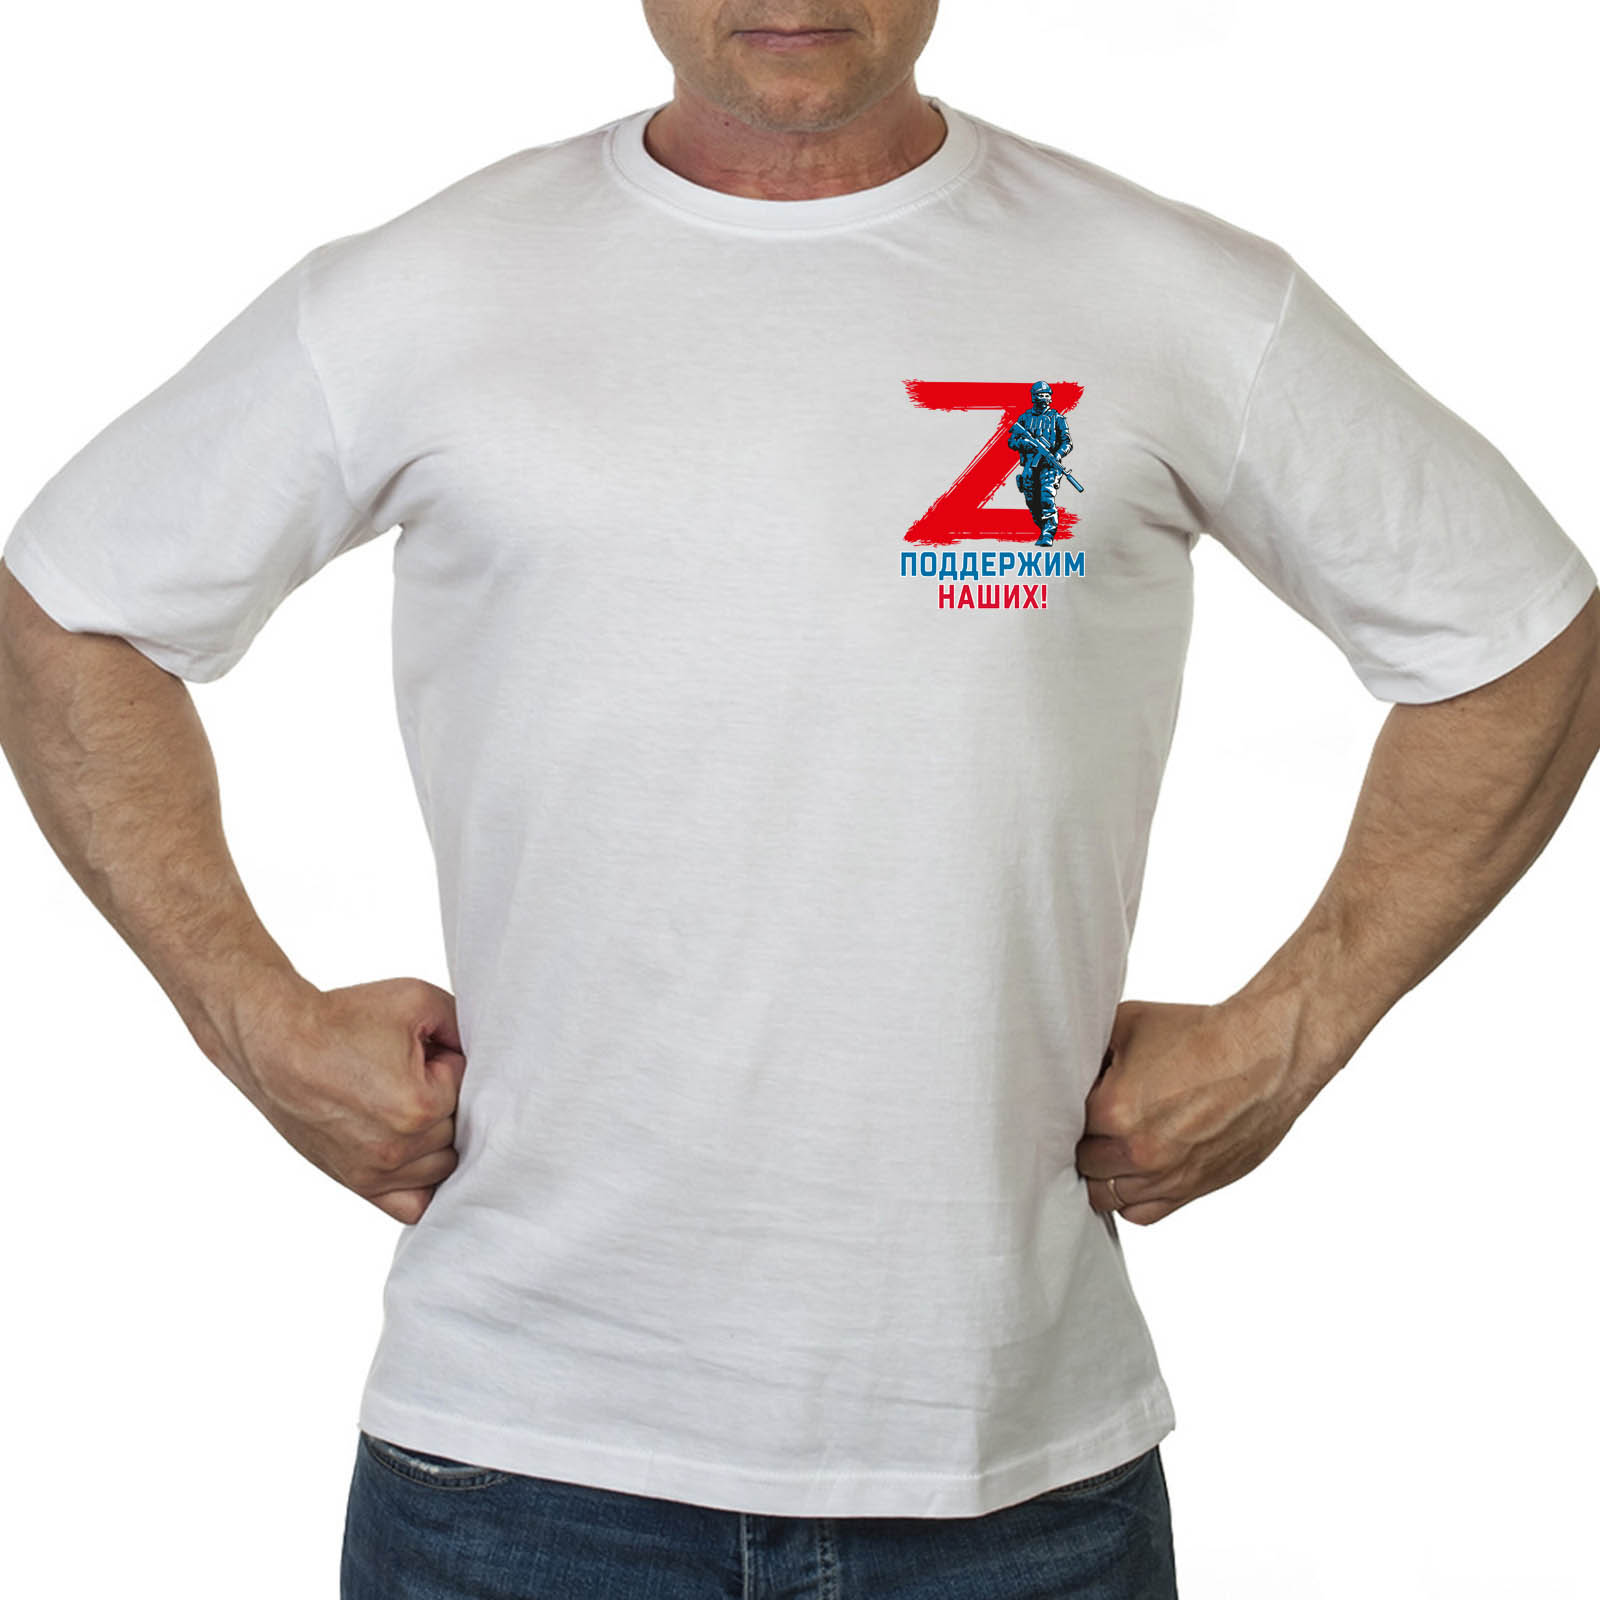 Купить в интернет магазине милитари футболку Z